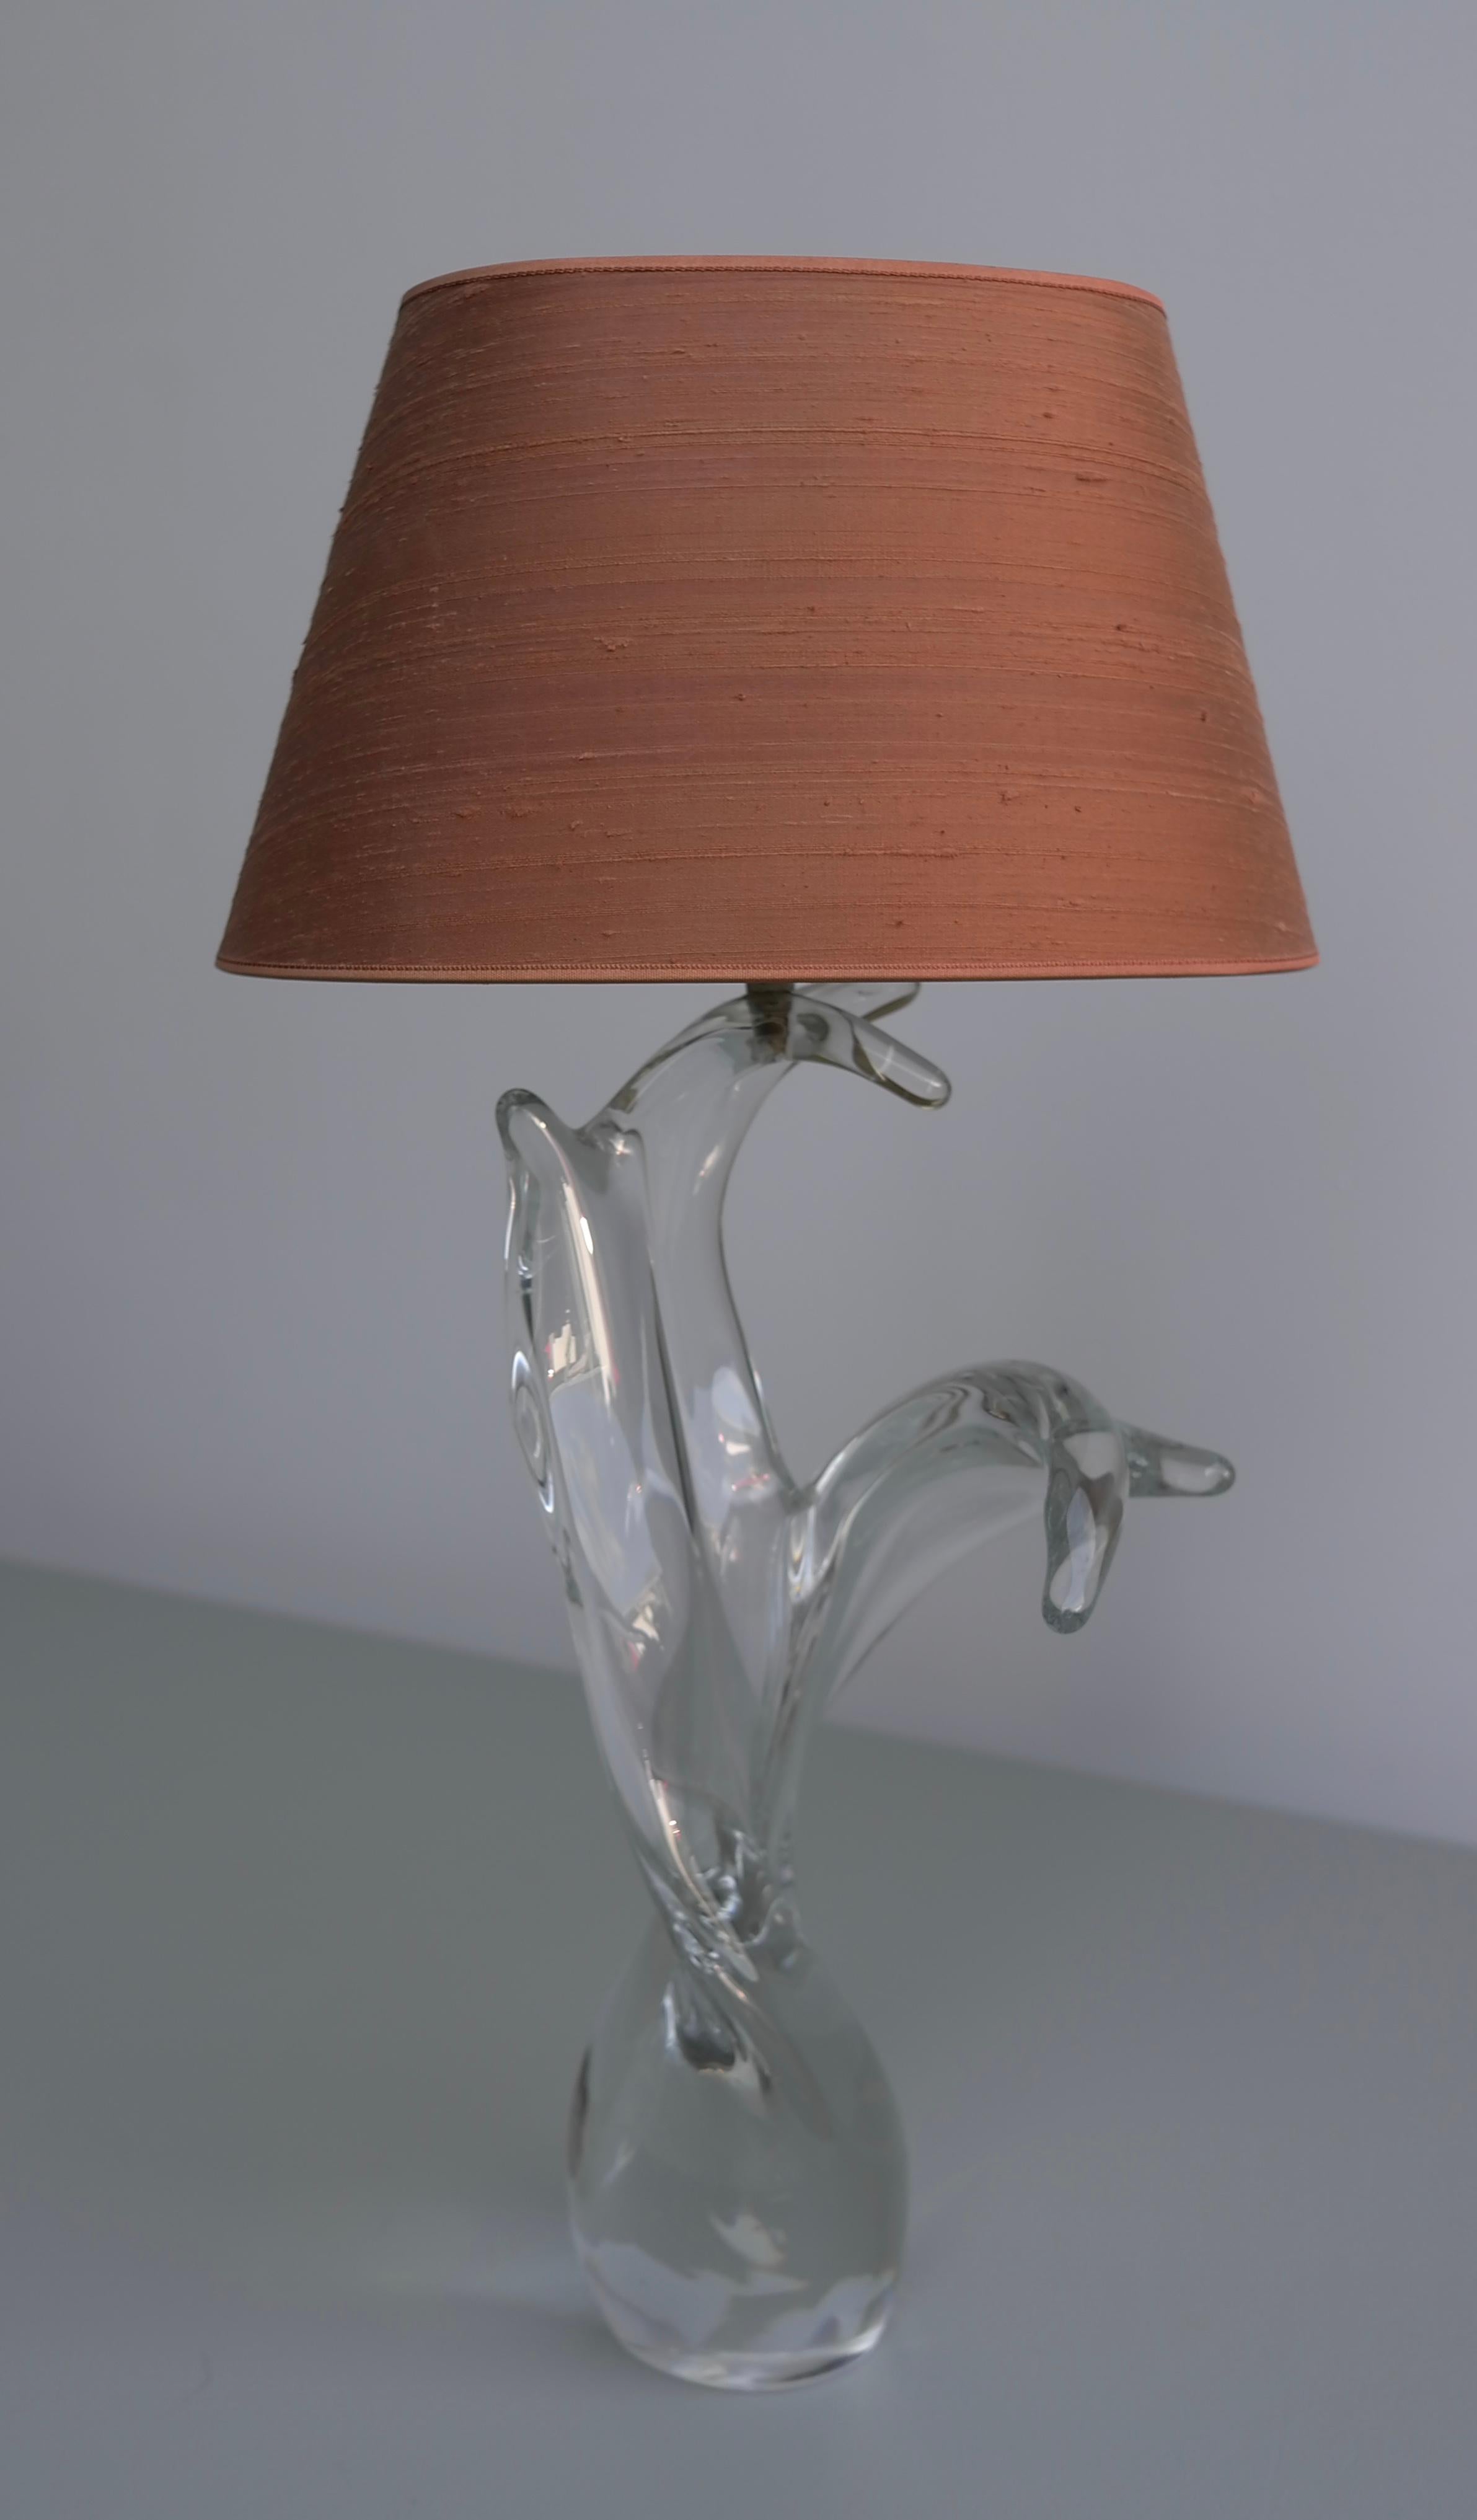 sculptural lamp shades